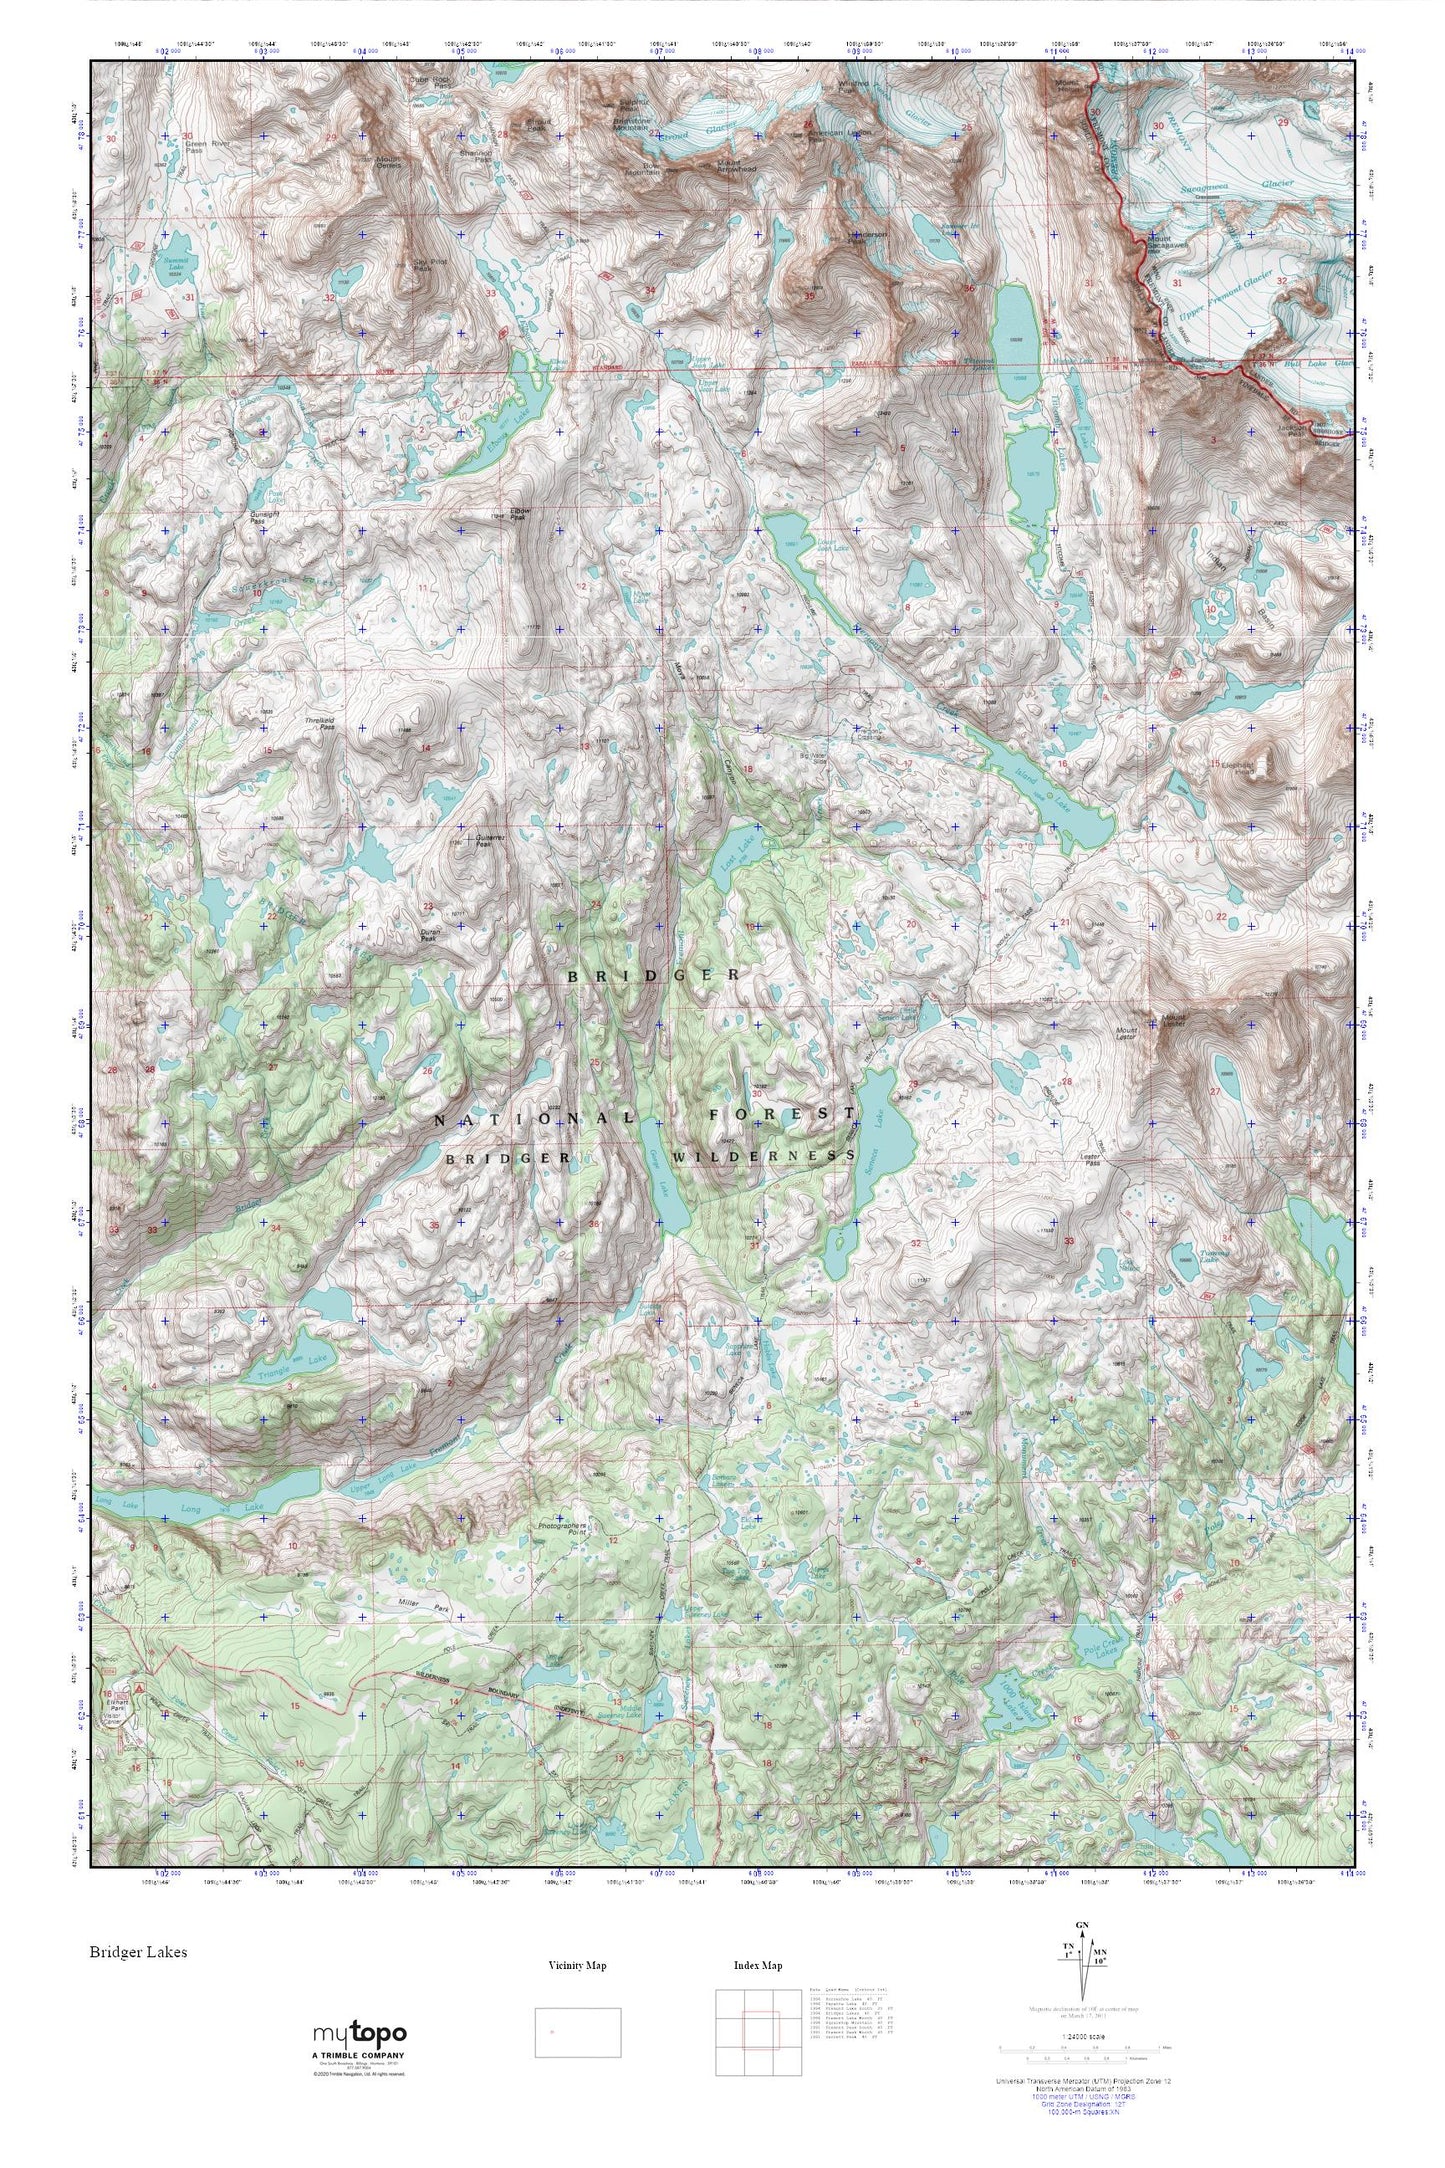 Bridger Lakes MyTopo Explorer Series Map Image